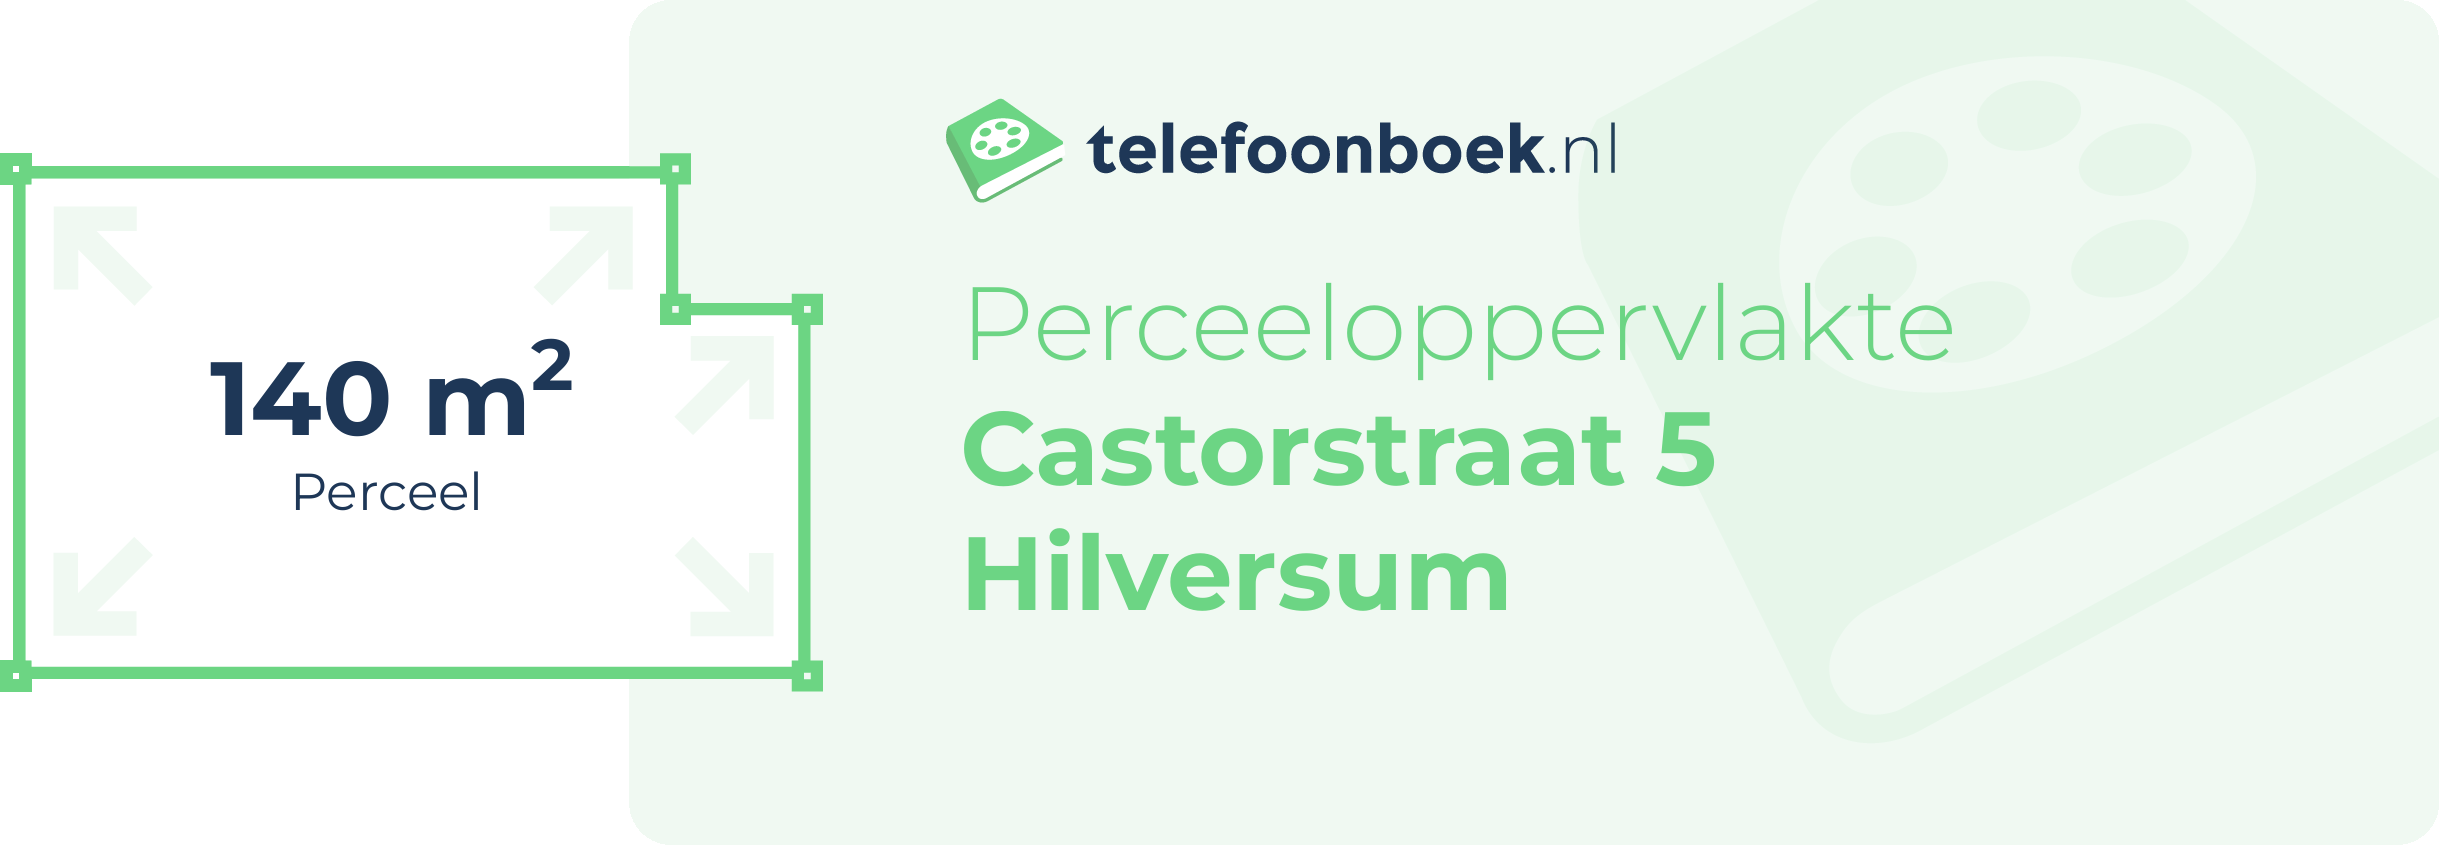 Perceeloppervlakte Castorstraat 5 Hilversum